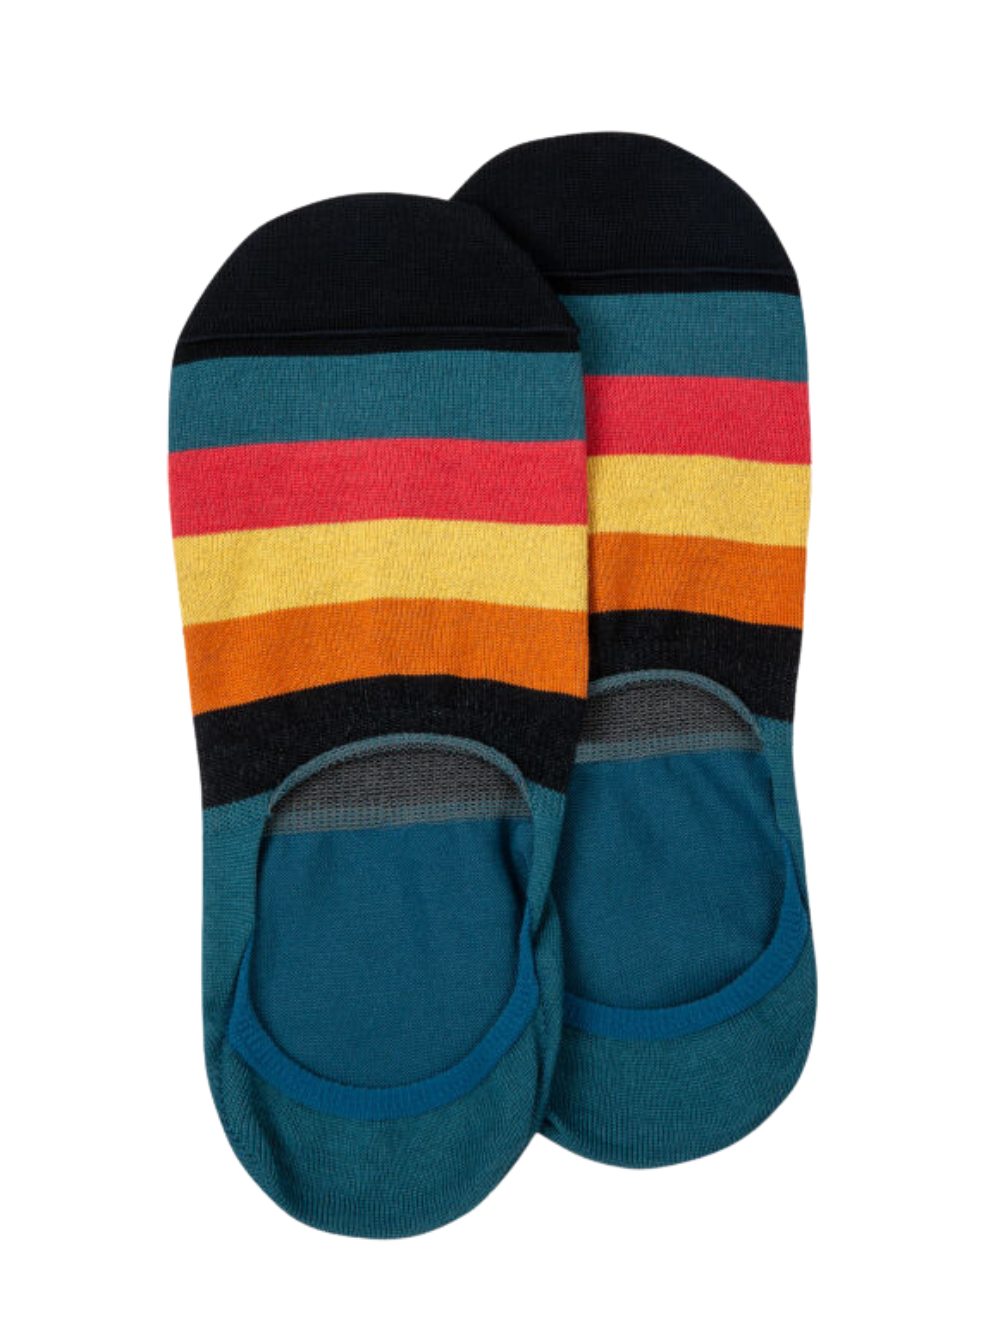 Men 'Artist Stripe' Loafer Socks (Blue)